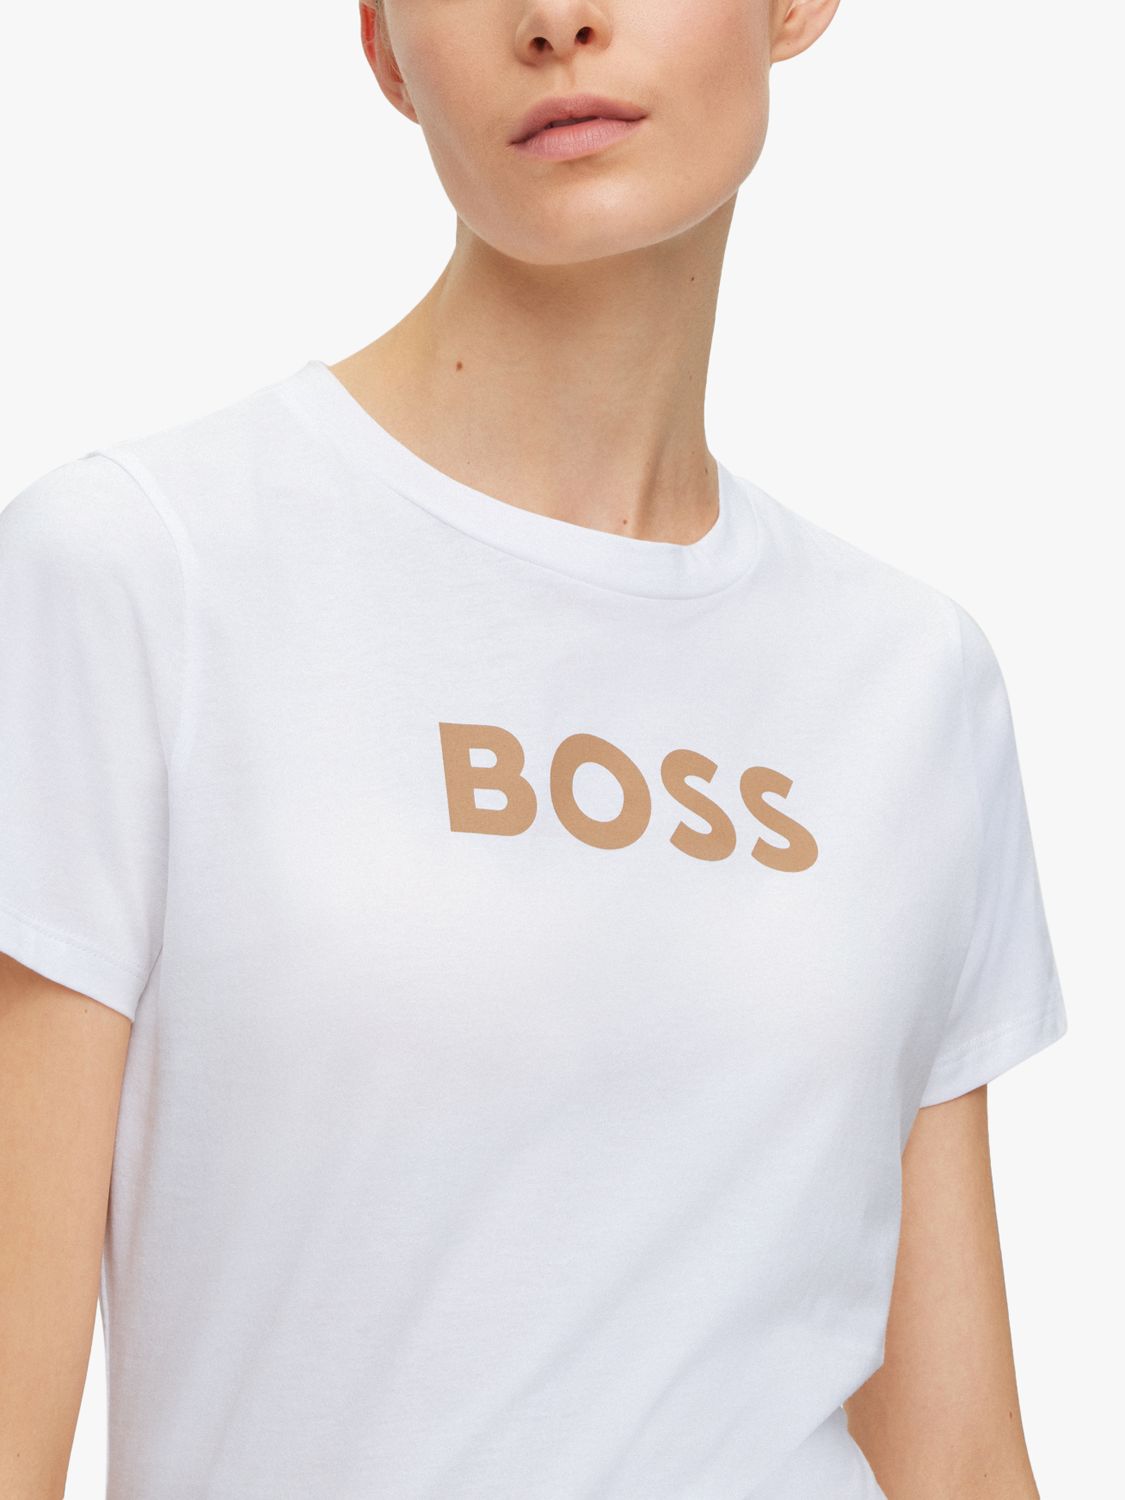 omhyggelig overrasket Jane Austen HUGO BOSS Cotton Logo T-Shirt, White at John Lewis & Partners